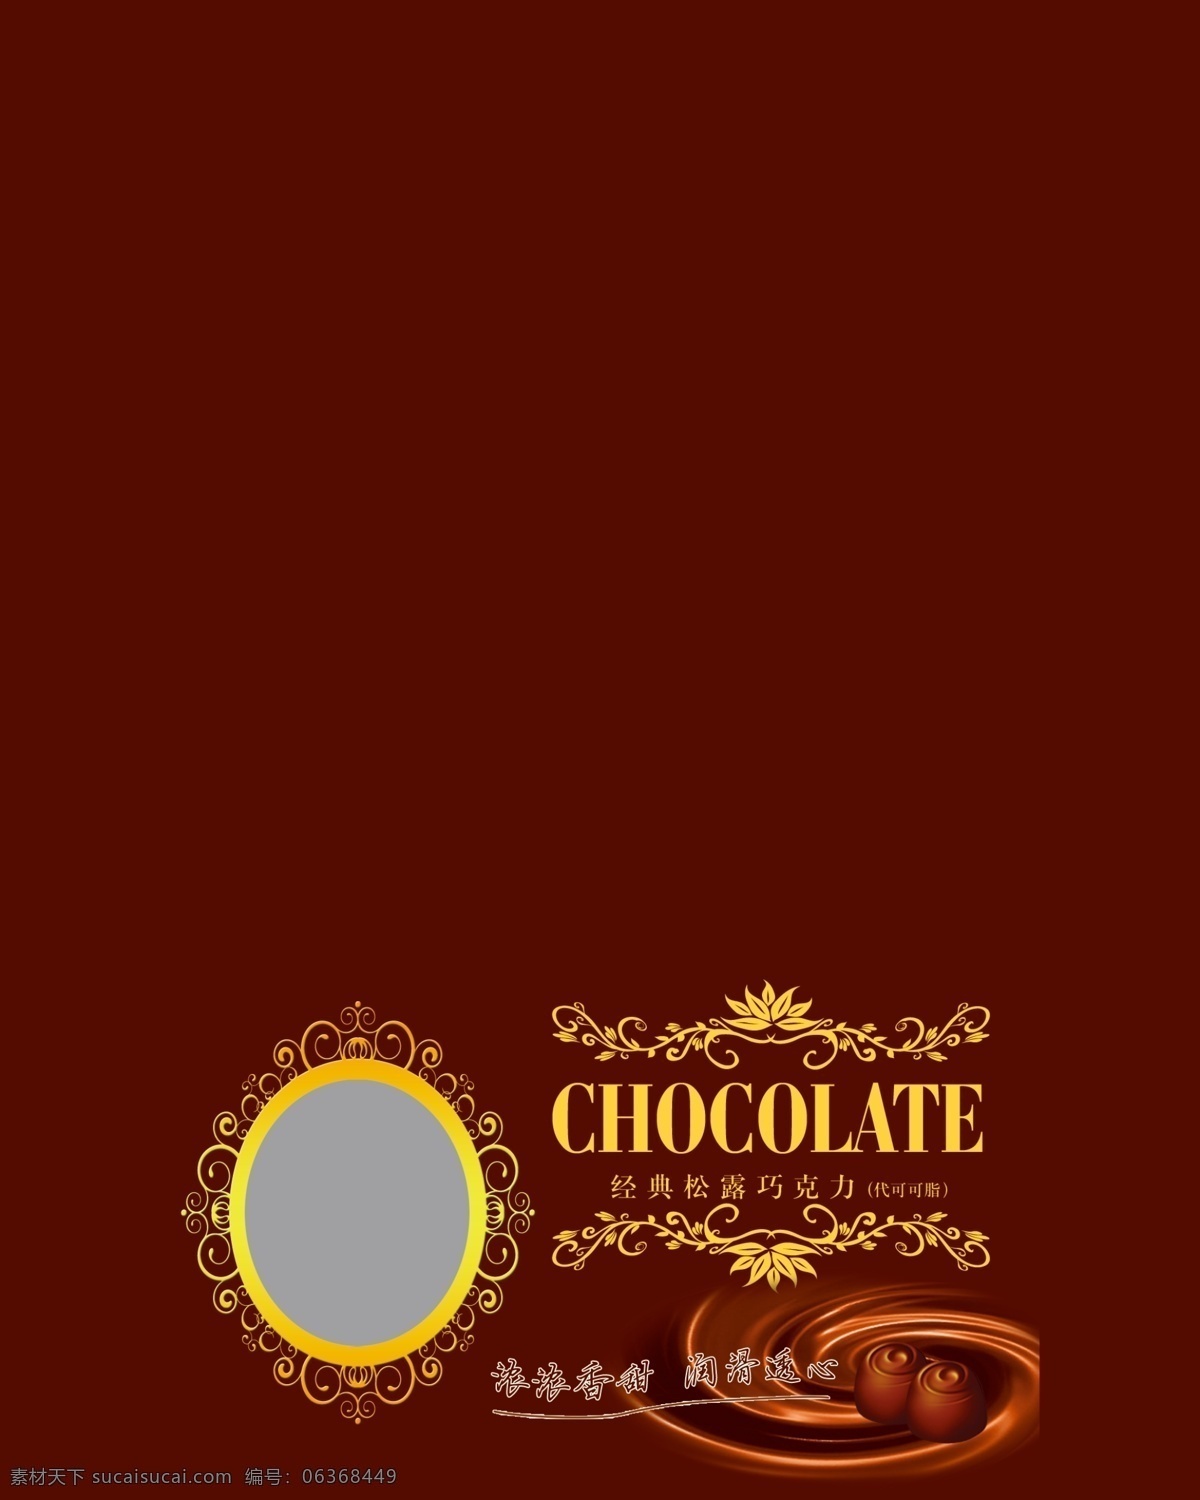 包装盒 包装设计 边框 花纹 欧式 巧克力 生产许可证 矢量 模板下载 巧克力纹 配料表 营养成份表 家居装饰素材